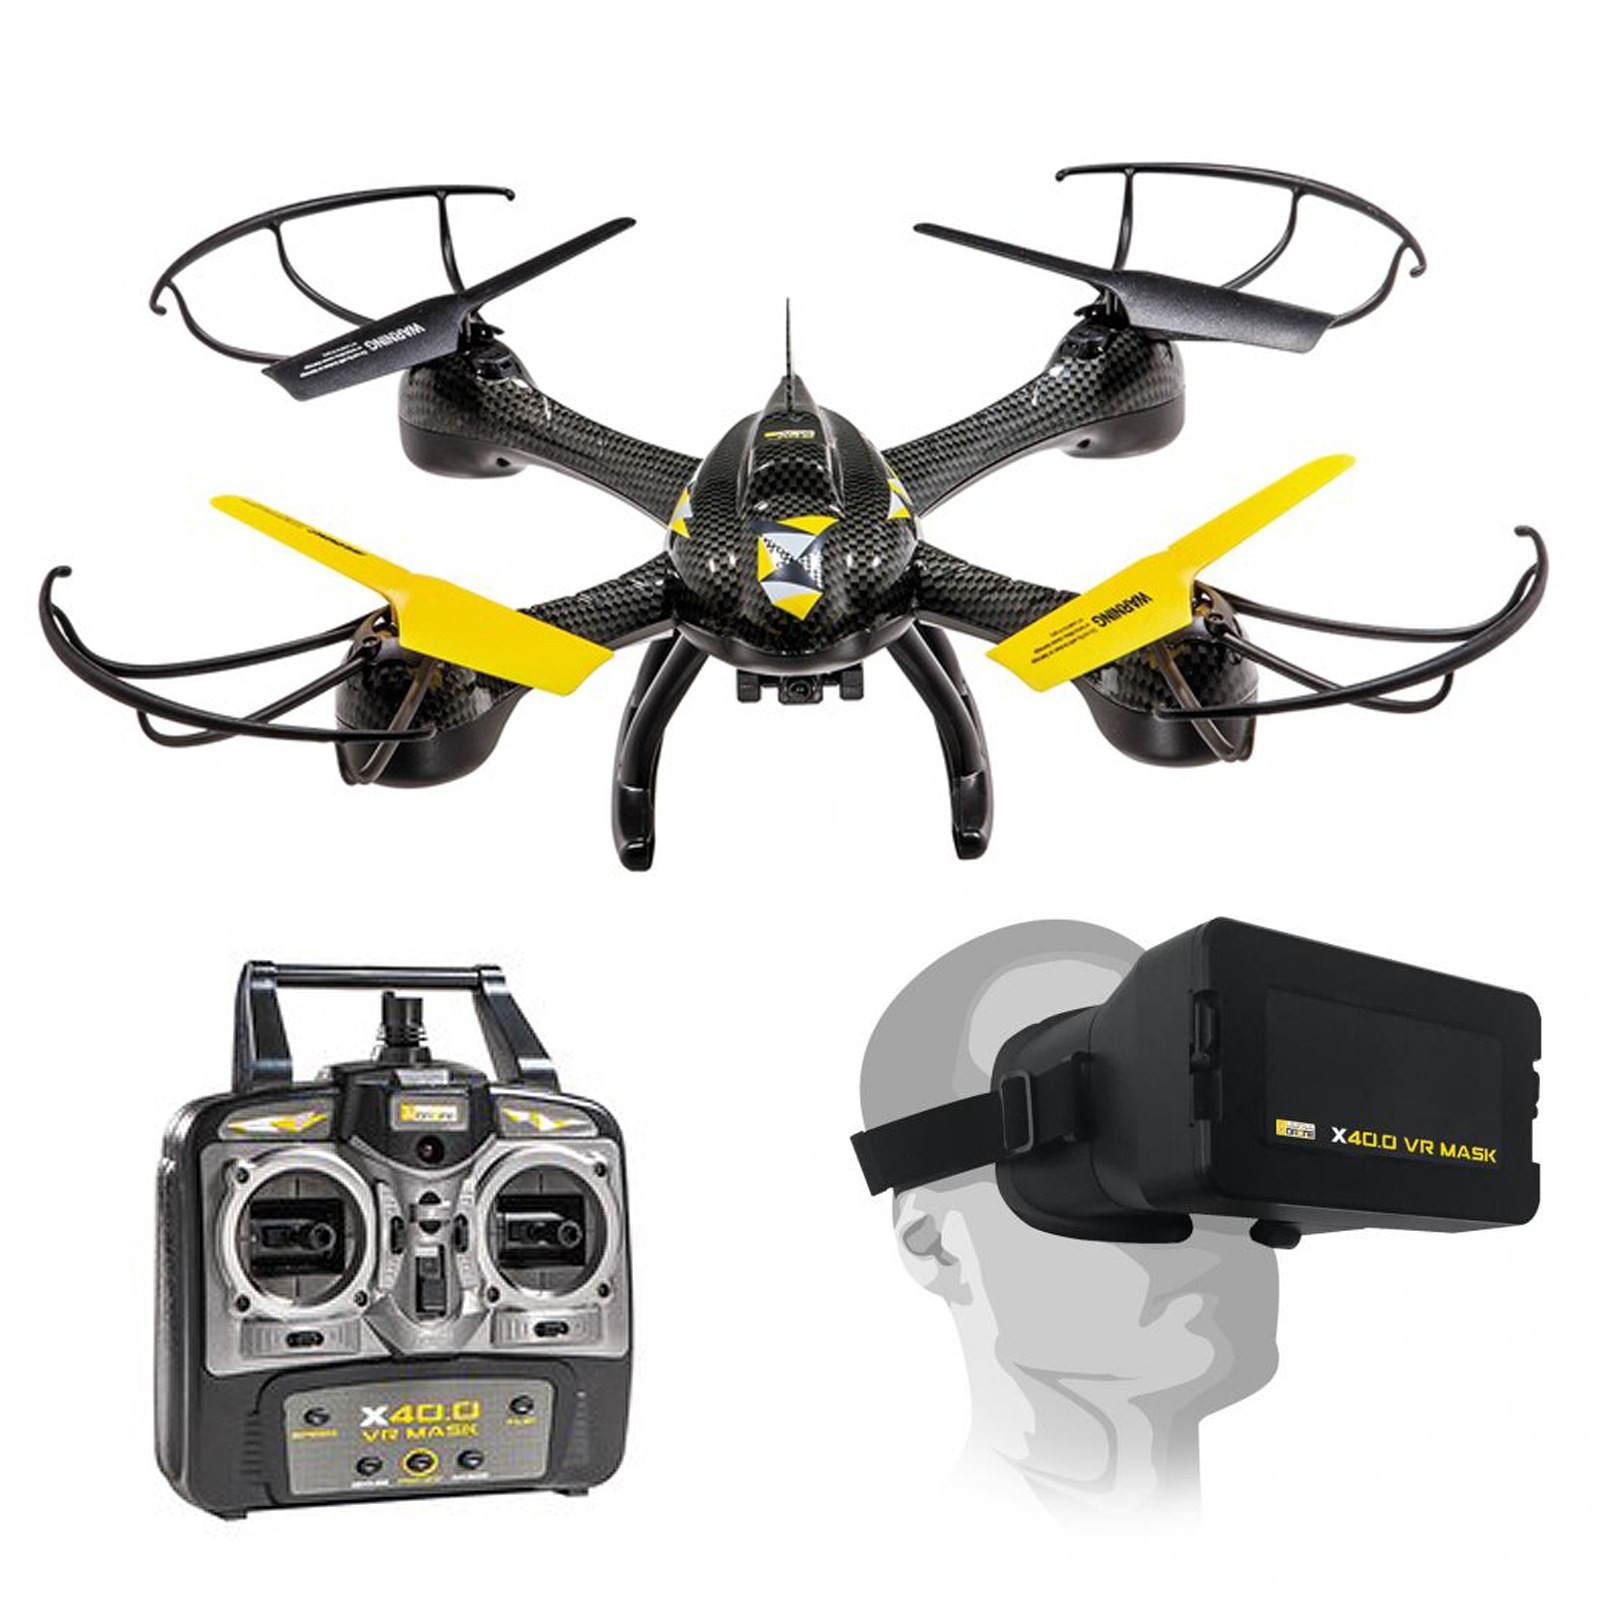 Drone Quadricottero 4ch Camera Visore 3D Vr Mask Ultradrone Mondo - Area Illumina